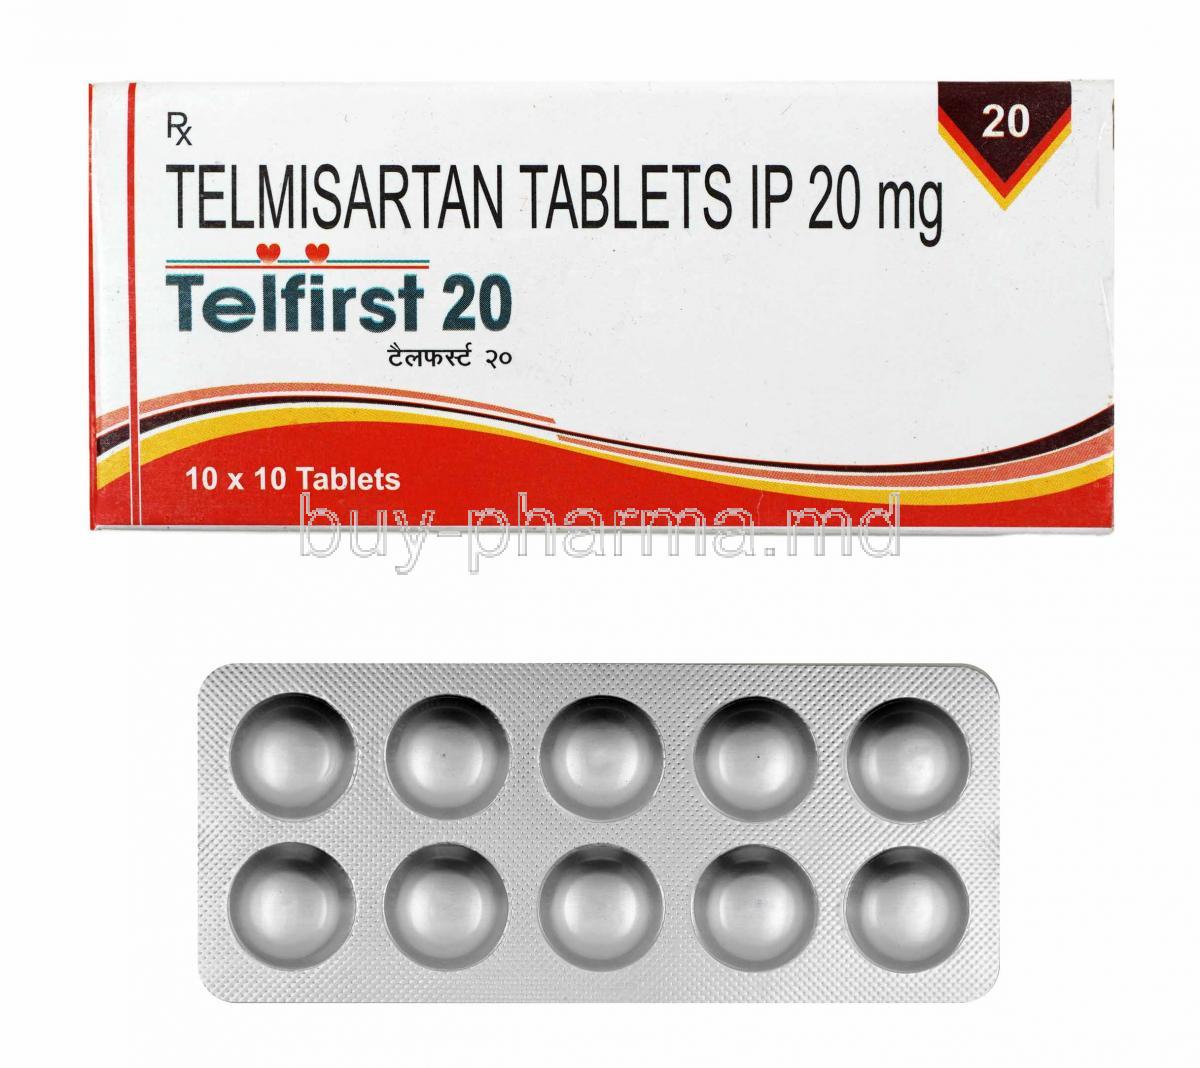 Telfirst, Telmisartan 20mg box and tablets